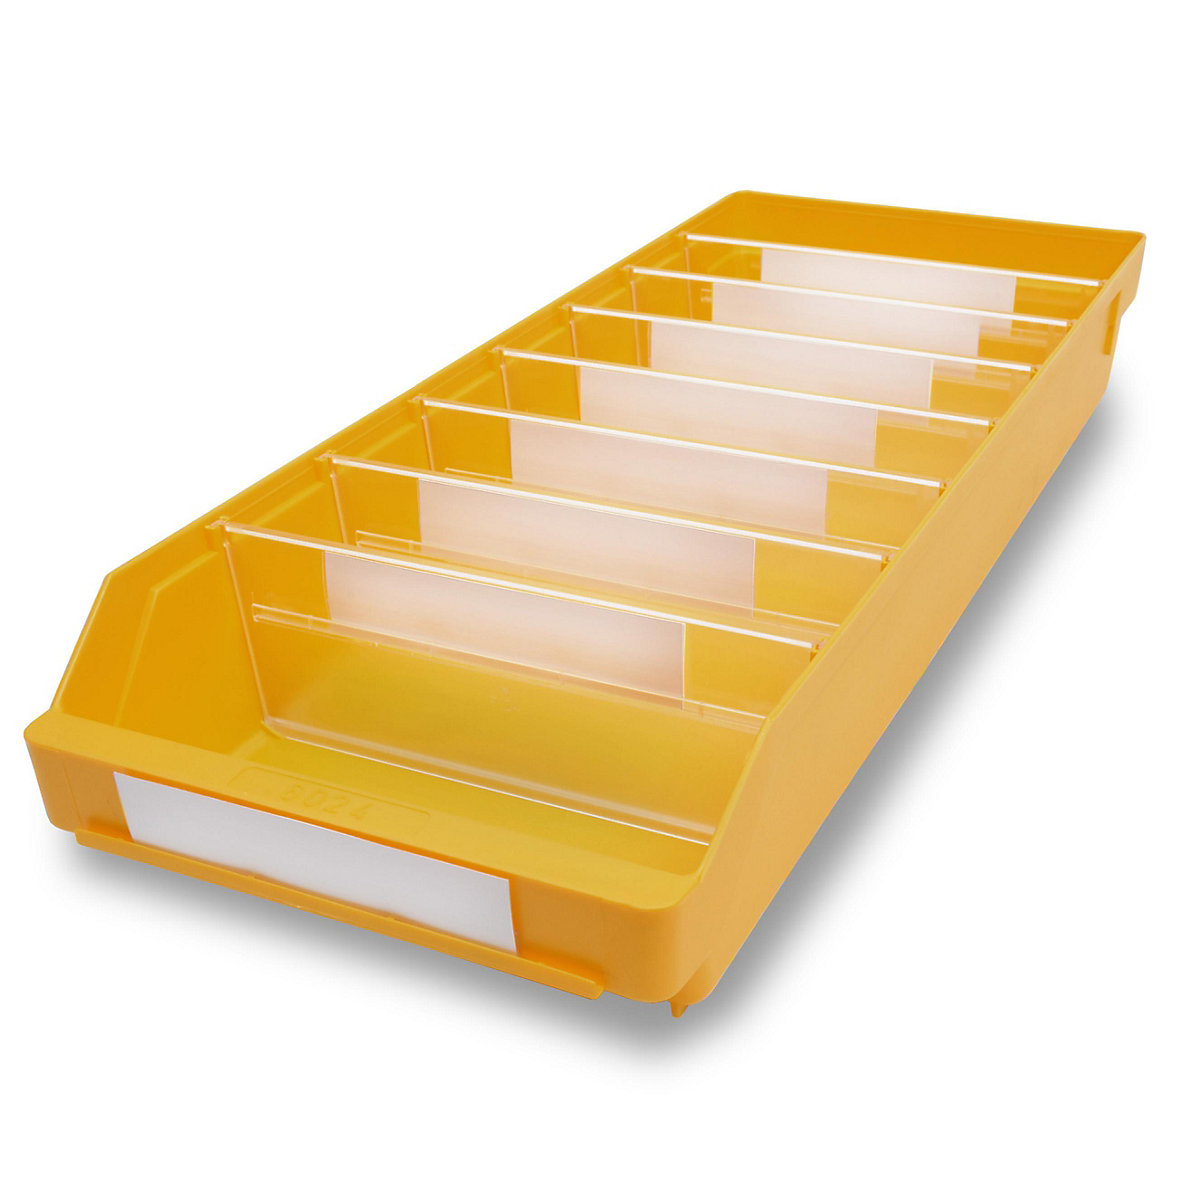 STEMO Regalkasten aus hochschlagfestem Polypropylen, gelb, LxBxH 600 x 240 x 95 mm, VE 15 Stk